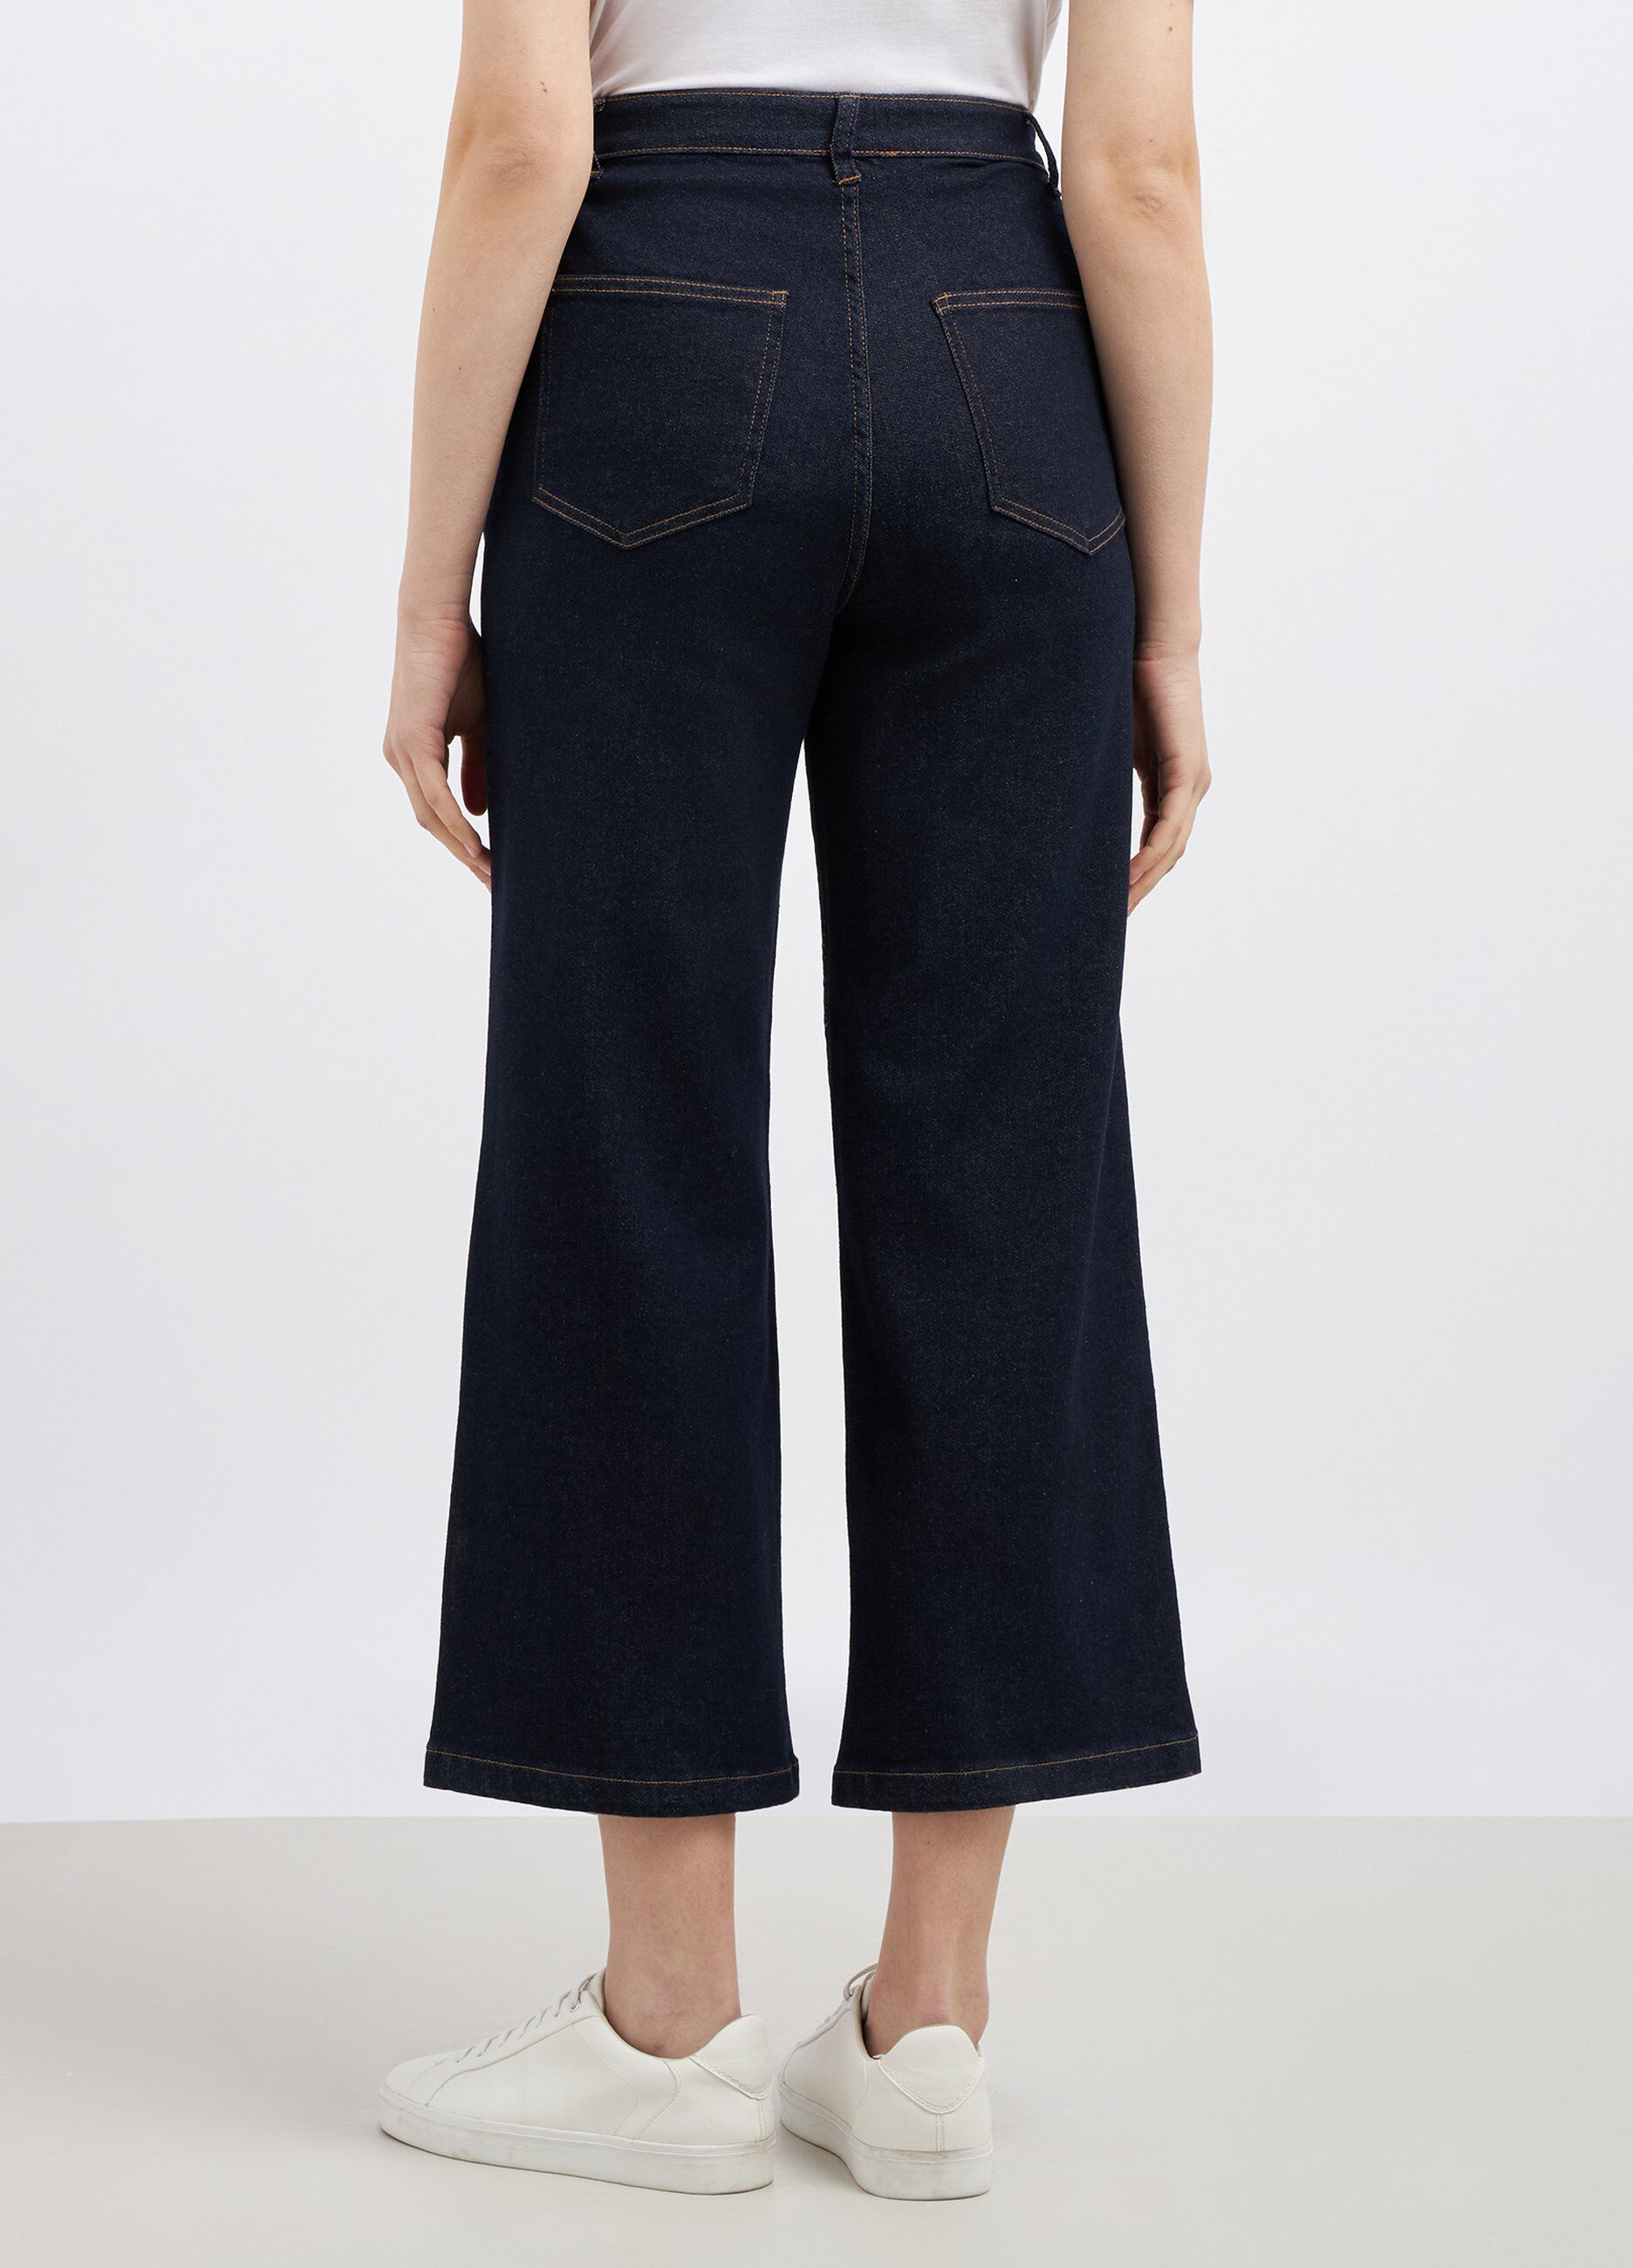 Pantaloni in denim di cotone stretch flare fit donna_1